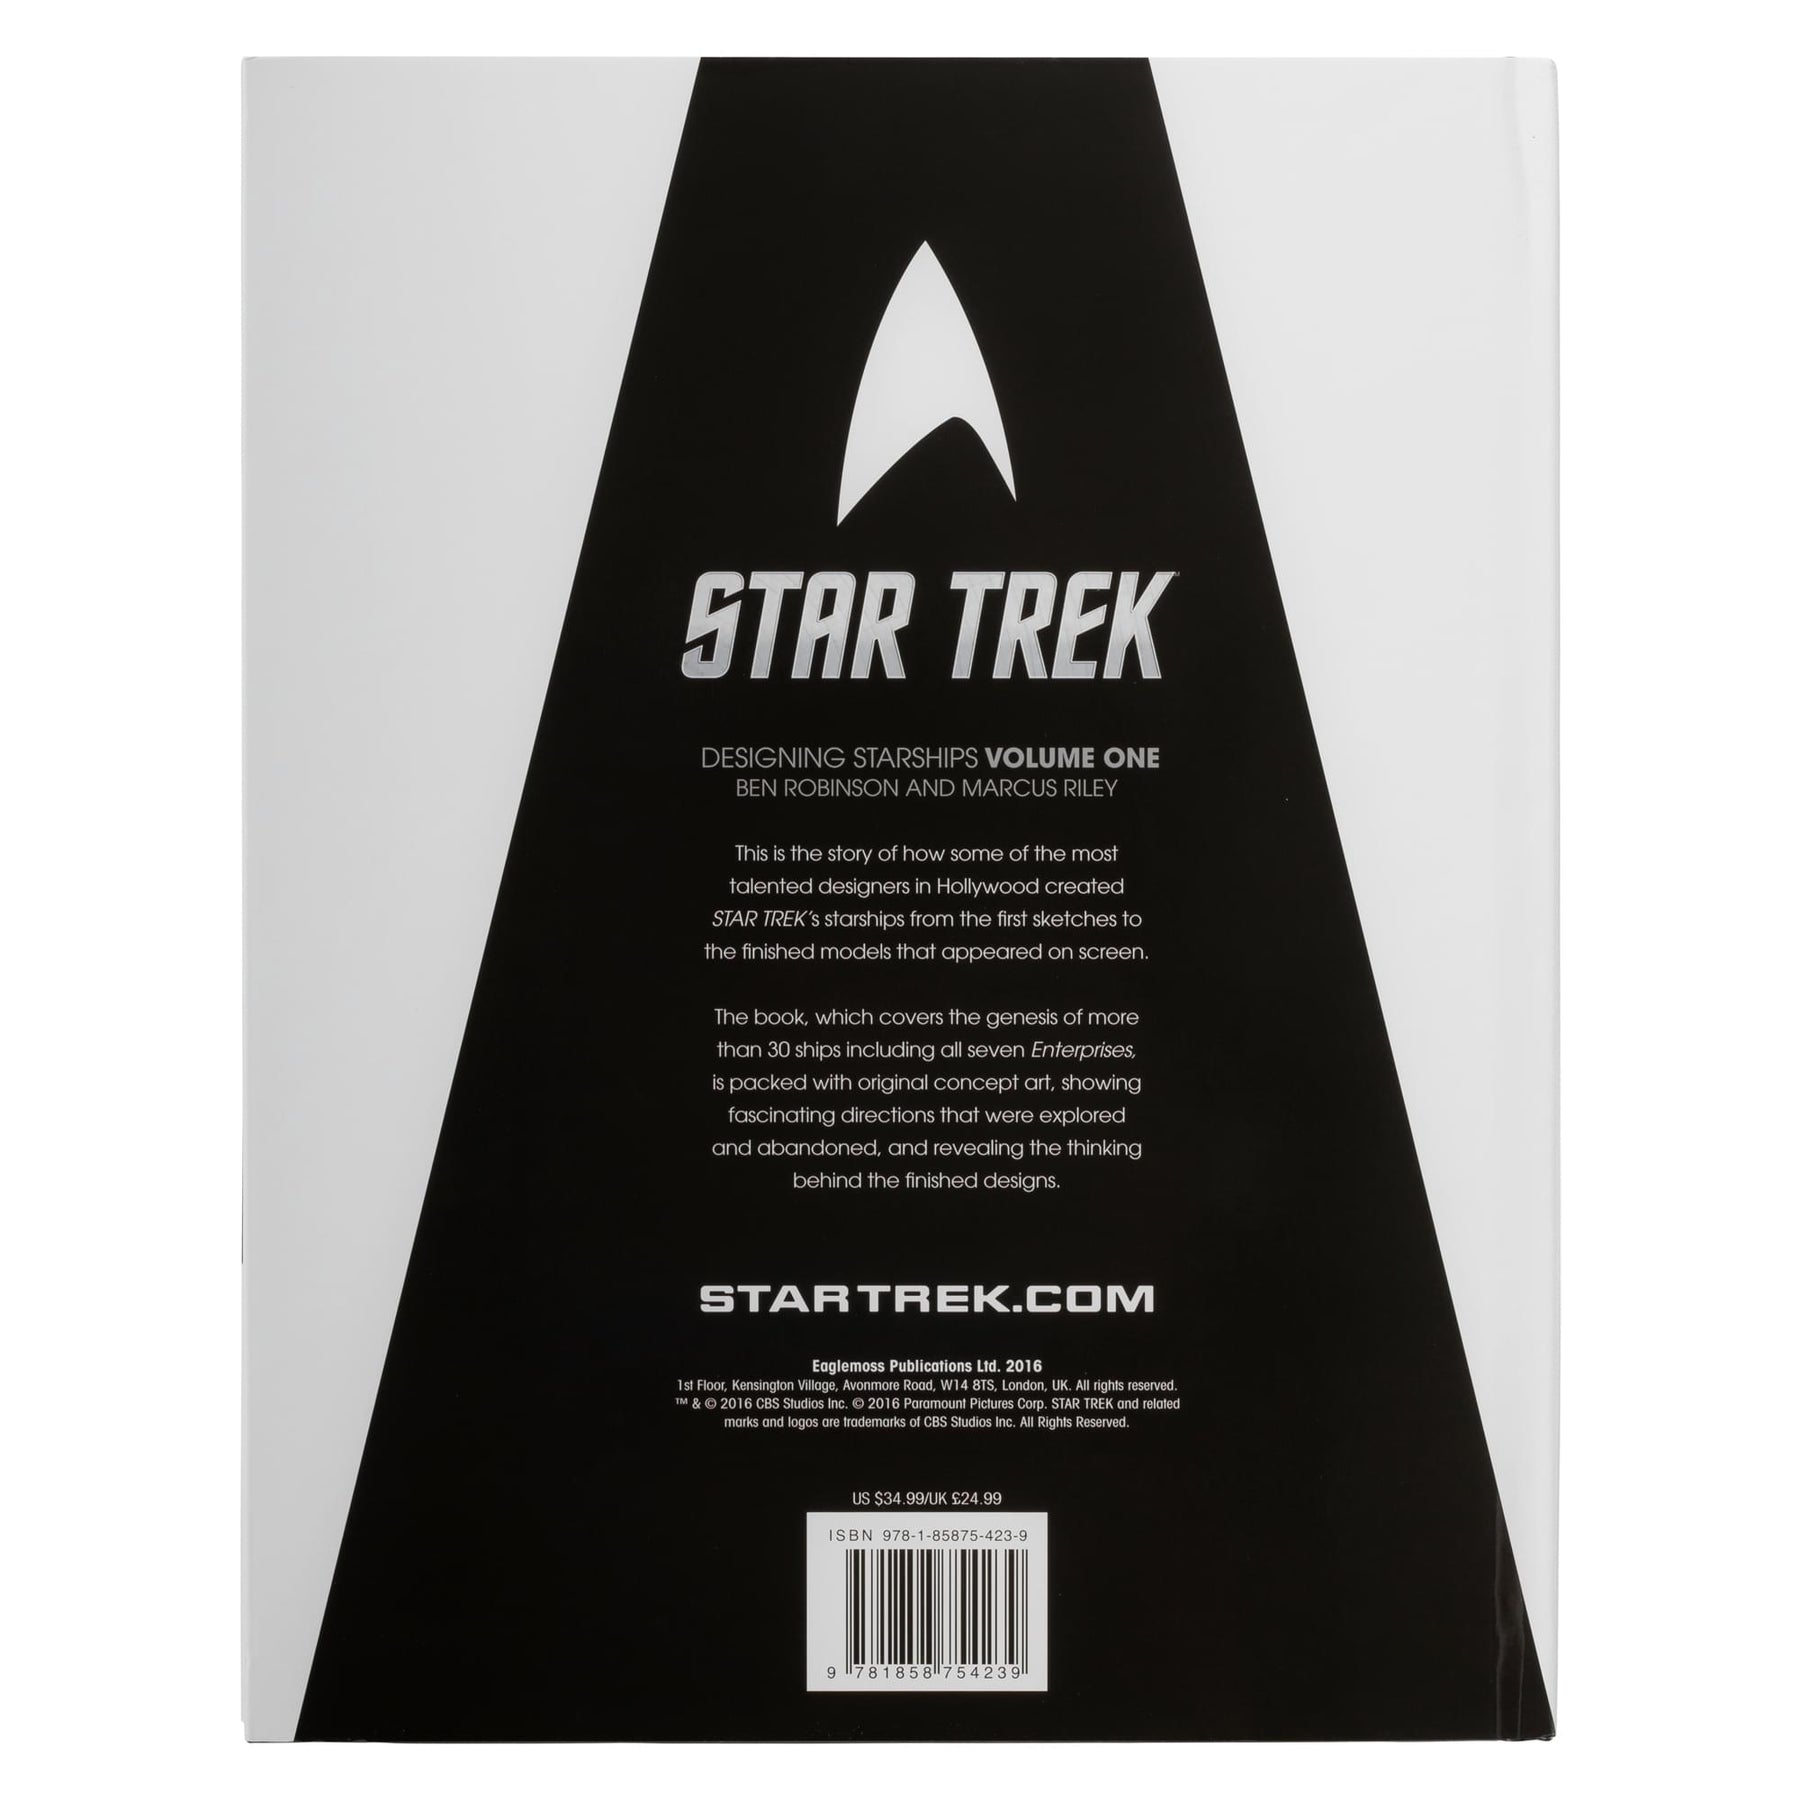 Star Trek Designing Starships Volume One Hardcover Book